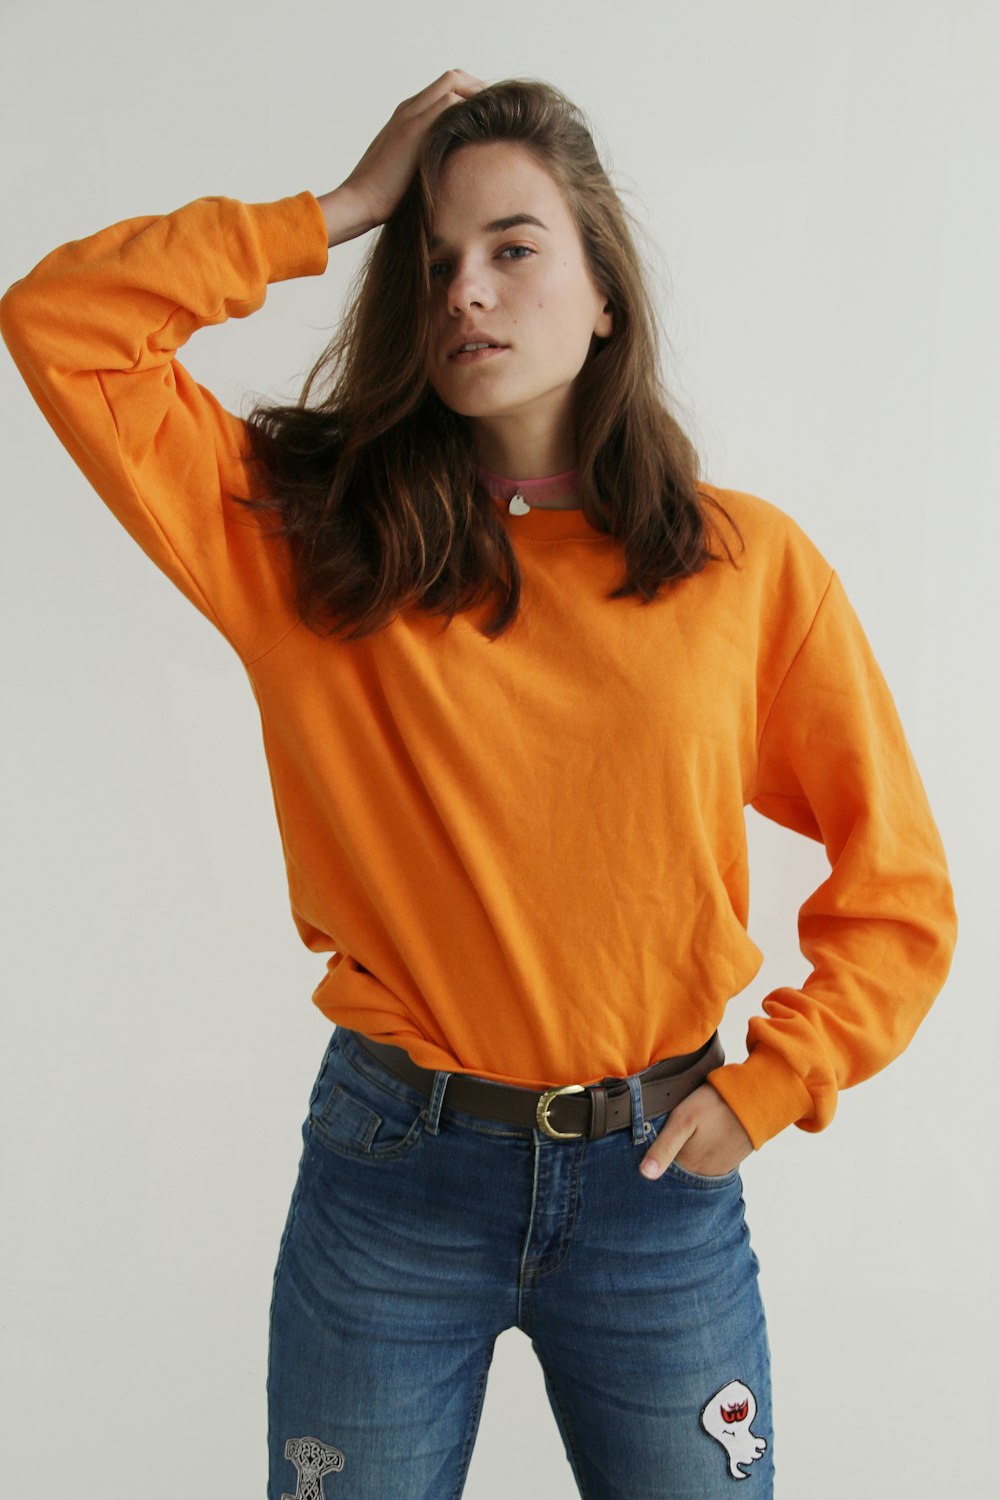 주황색 크루넥 스웨트셔츠를 입고 오른손을 머리에 얹고 서 있는 여자